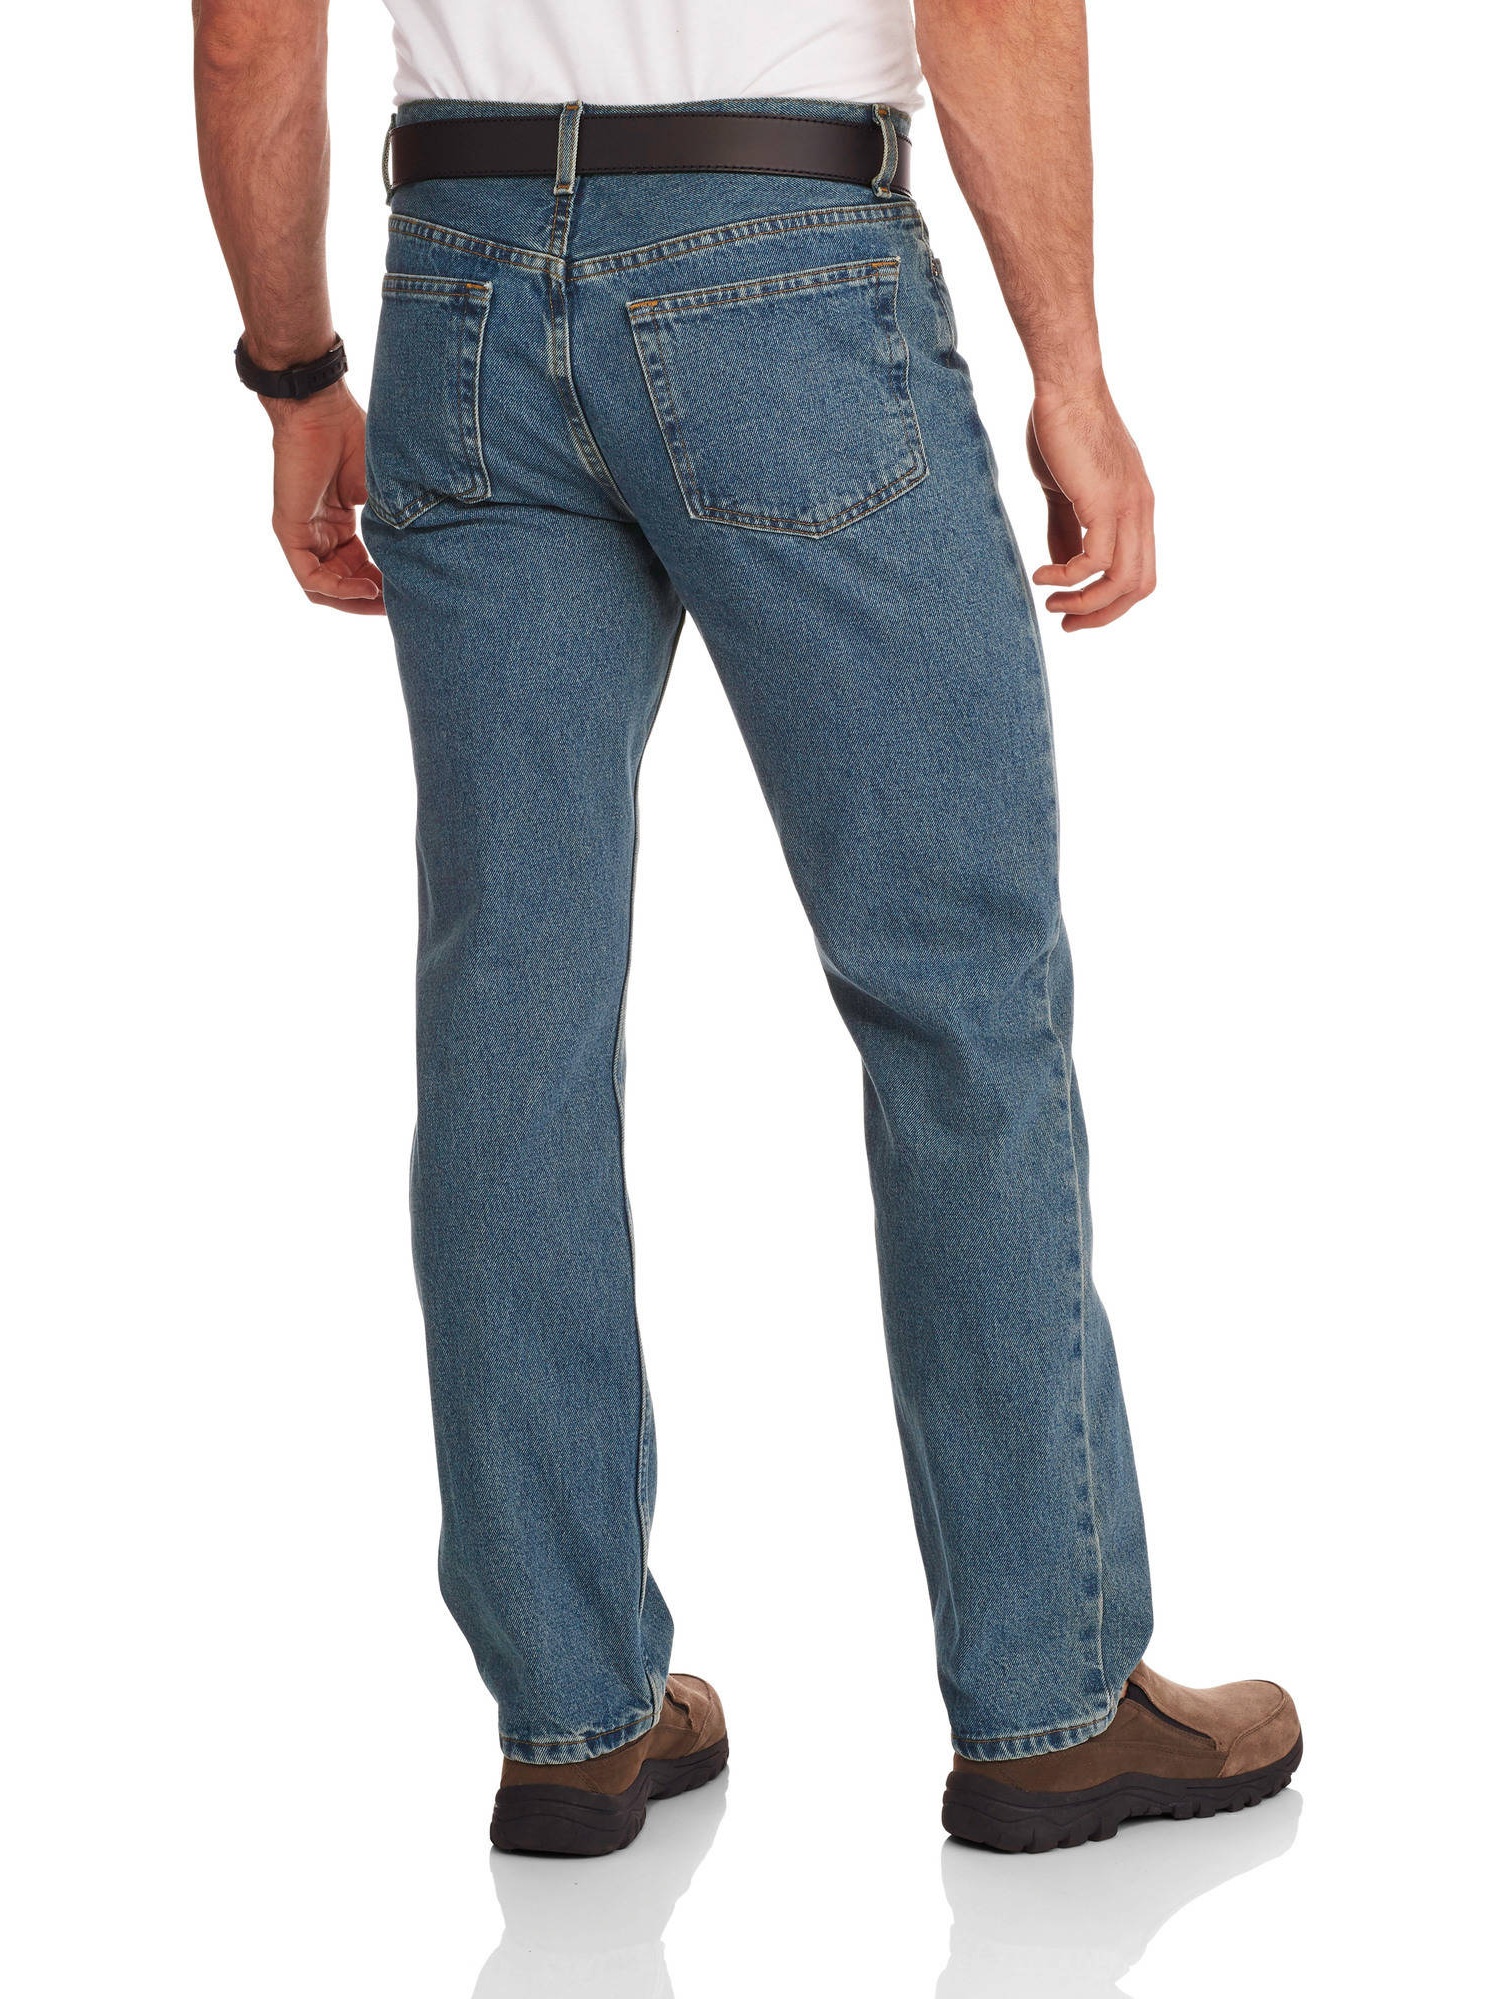 Men's Regular Fit Jeans - image 2 of 2